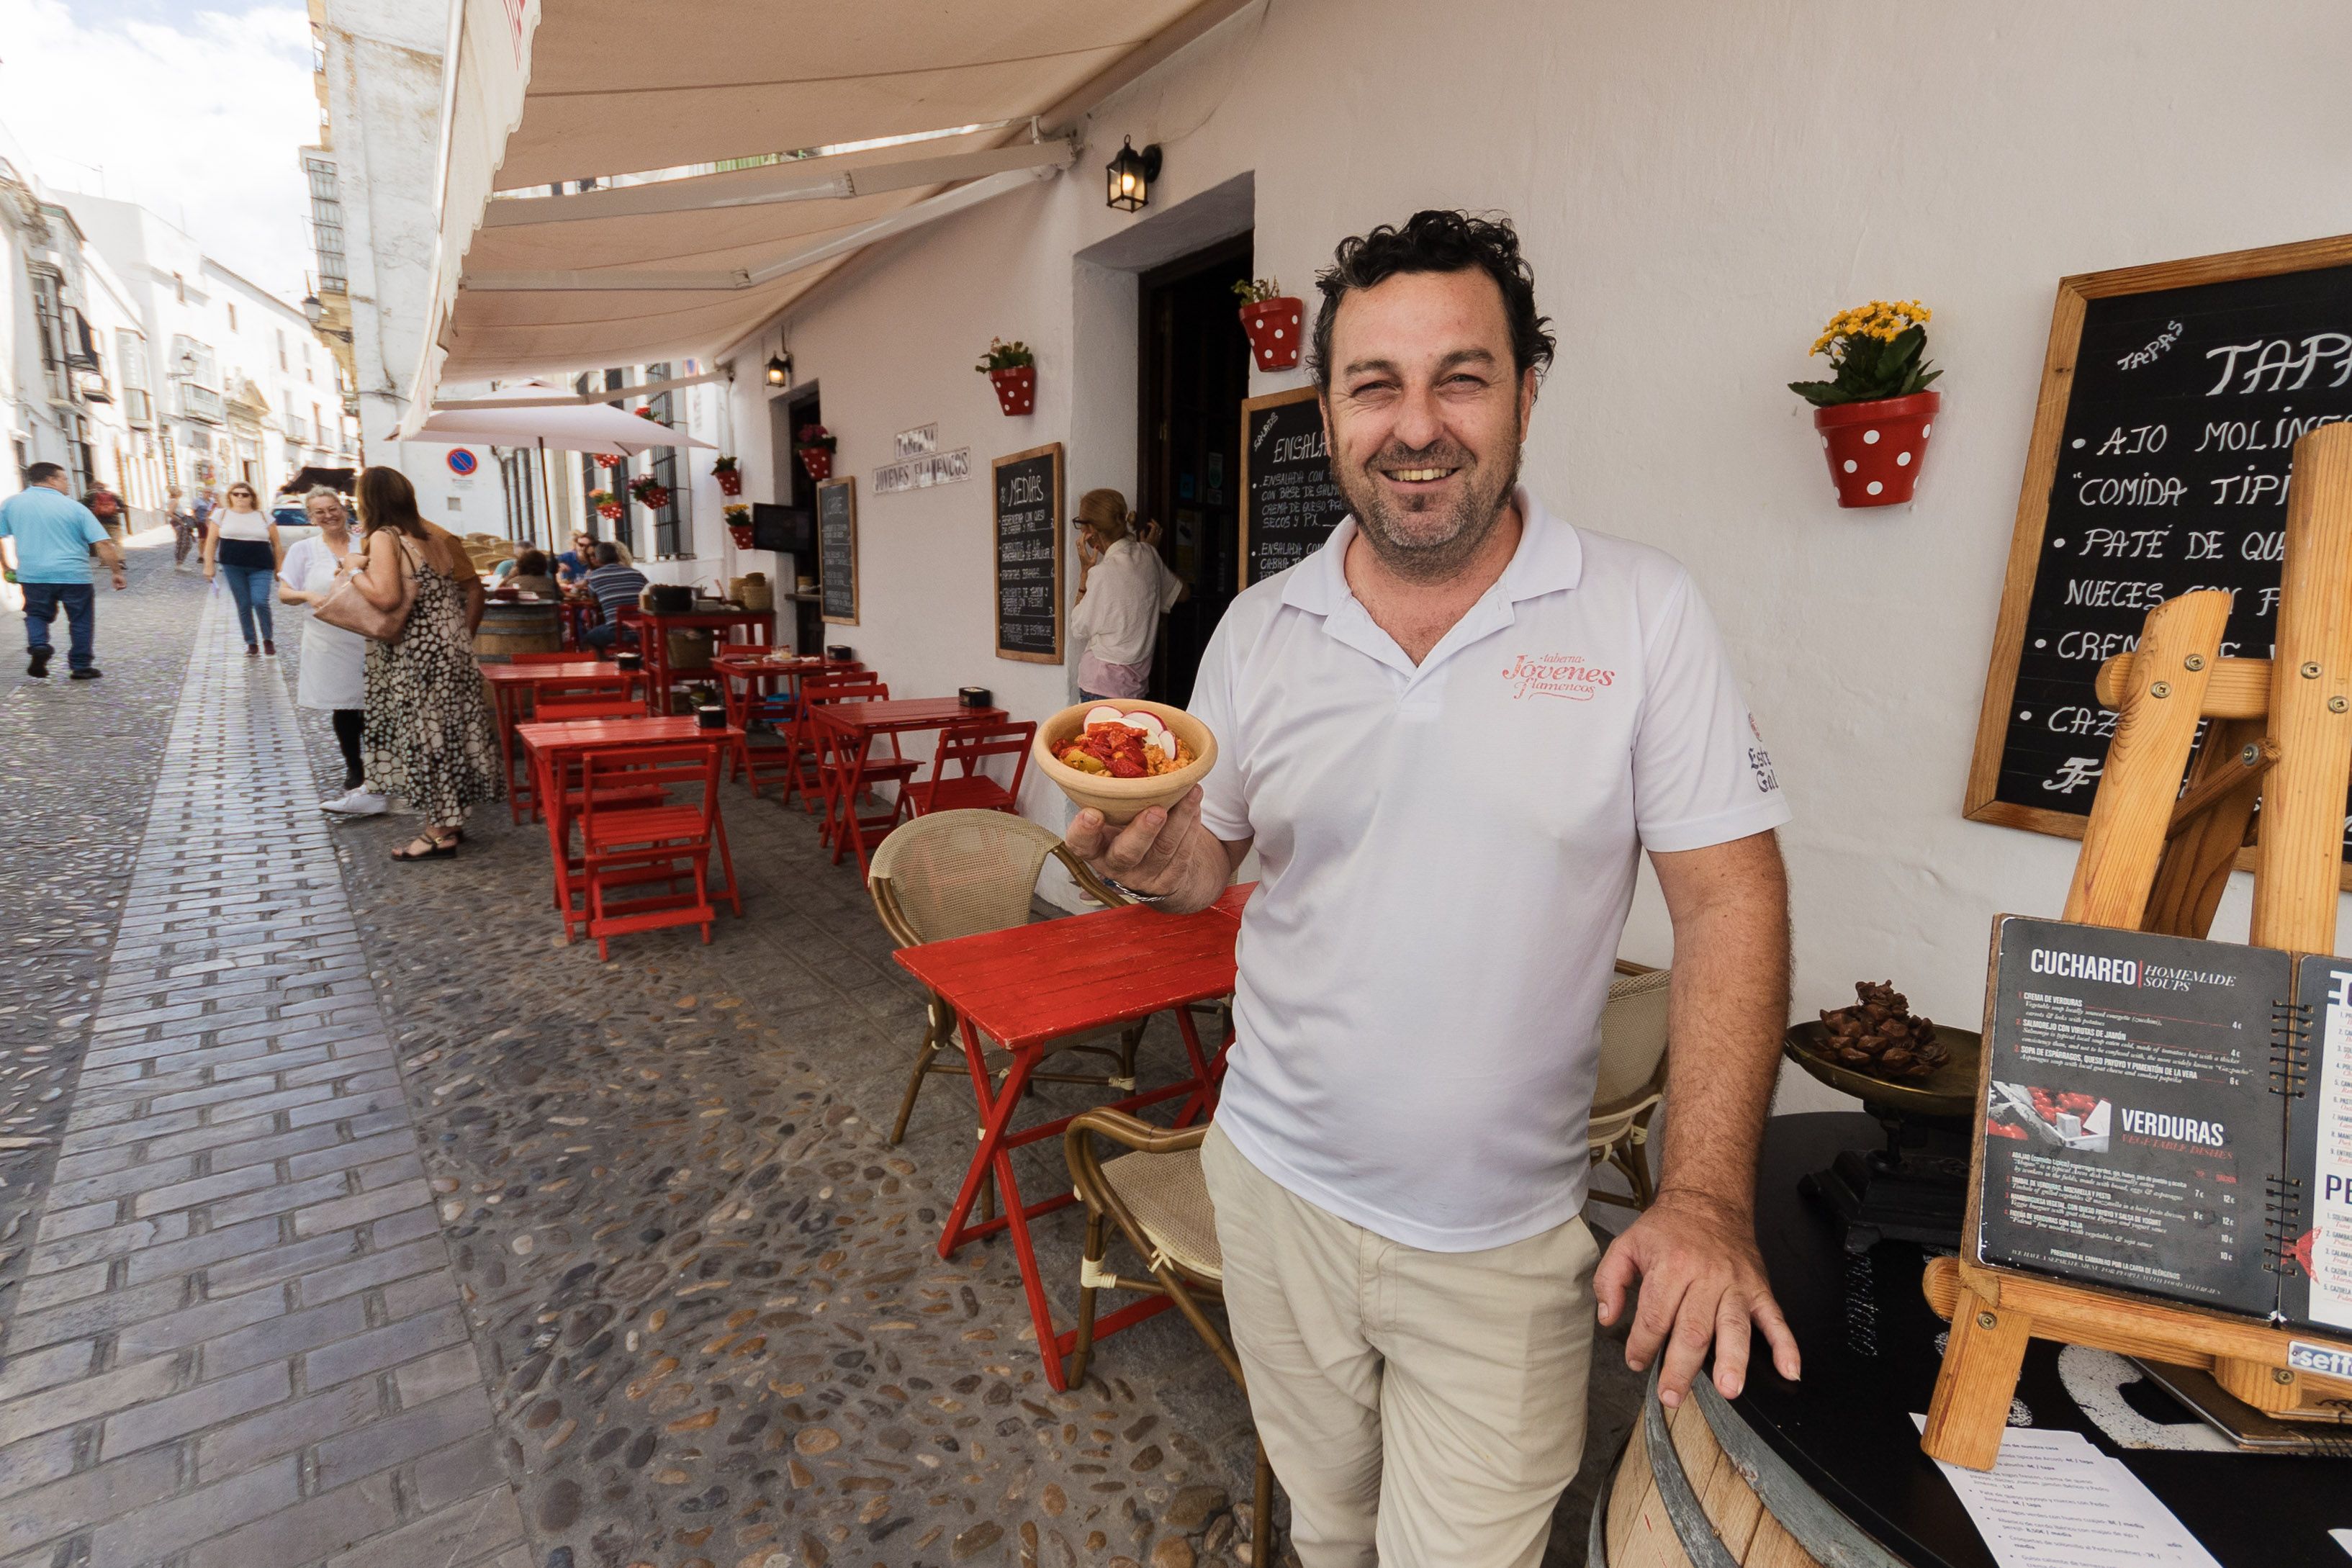 Cristóbal Pérez dirige esta popular taberna que desde 2013 está instalada en el casco antiguo de Arcos.